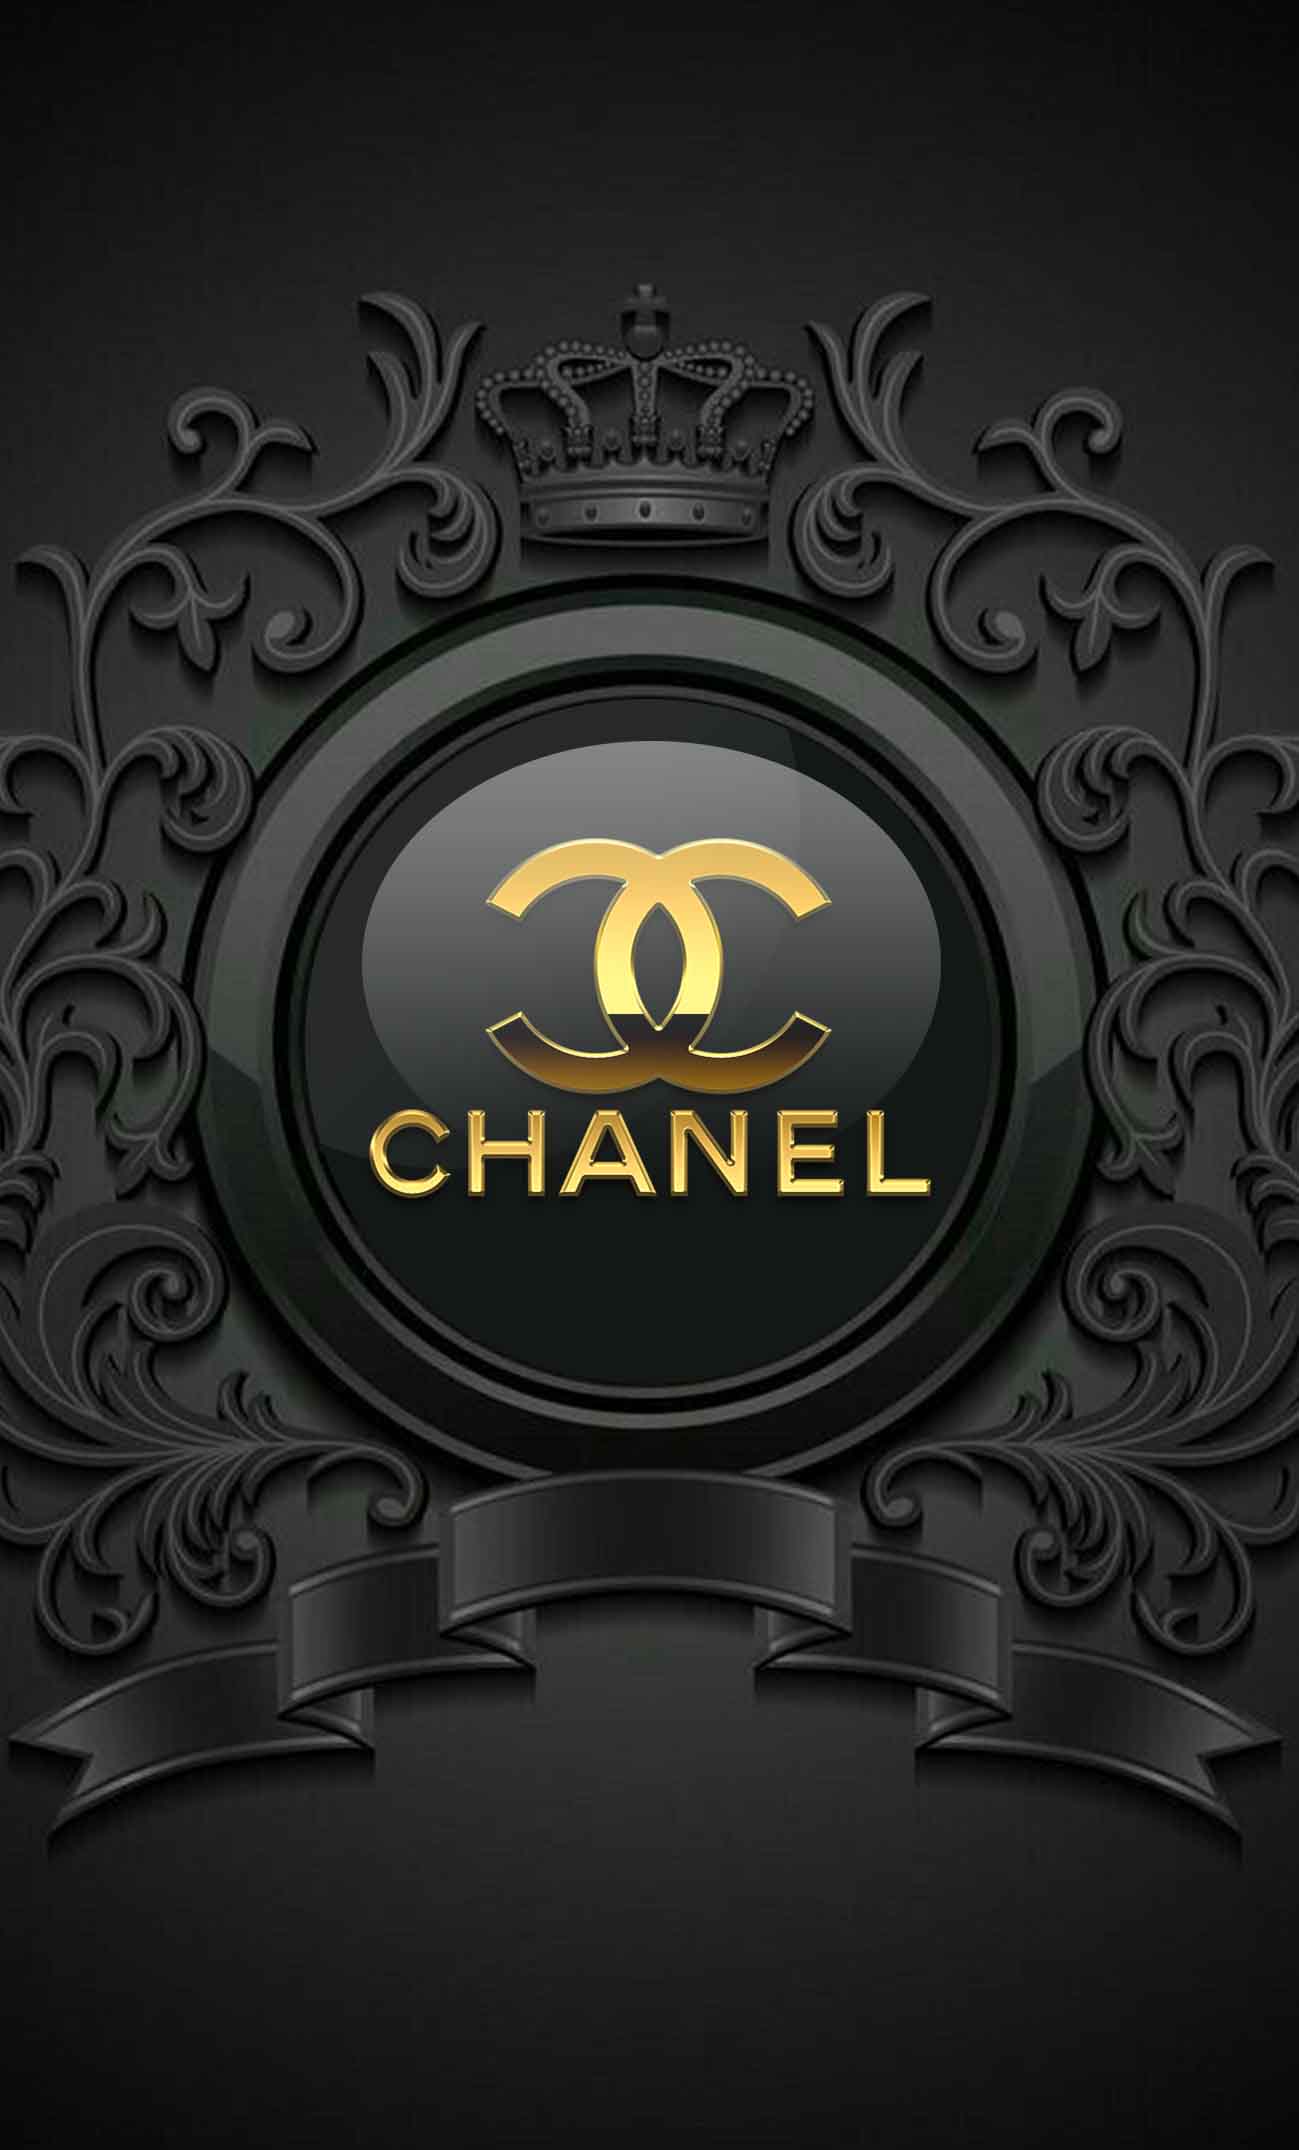 Chanel GIF  Tải xuống và Chia sẻ trên PHONEKY